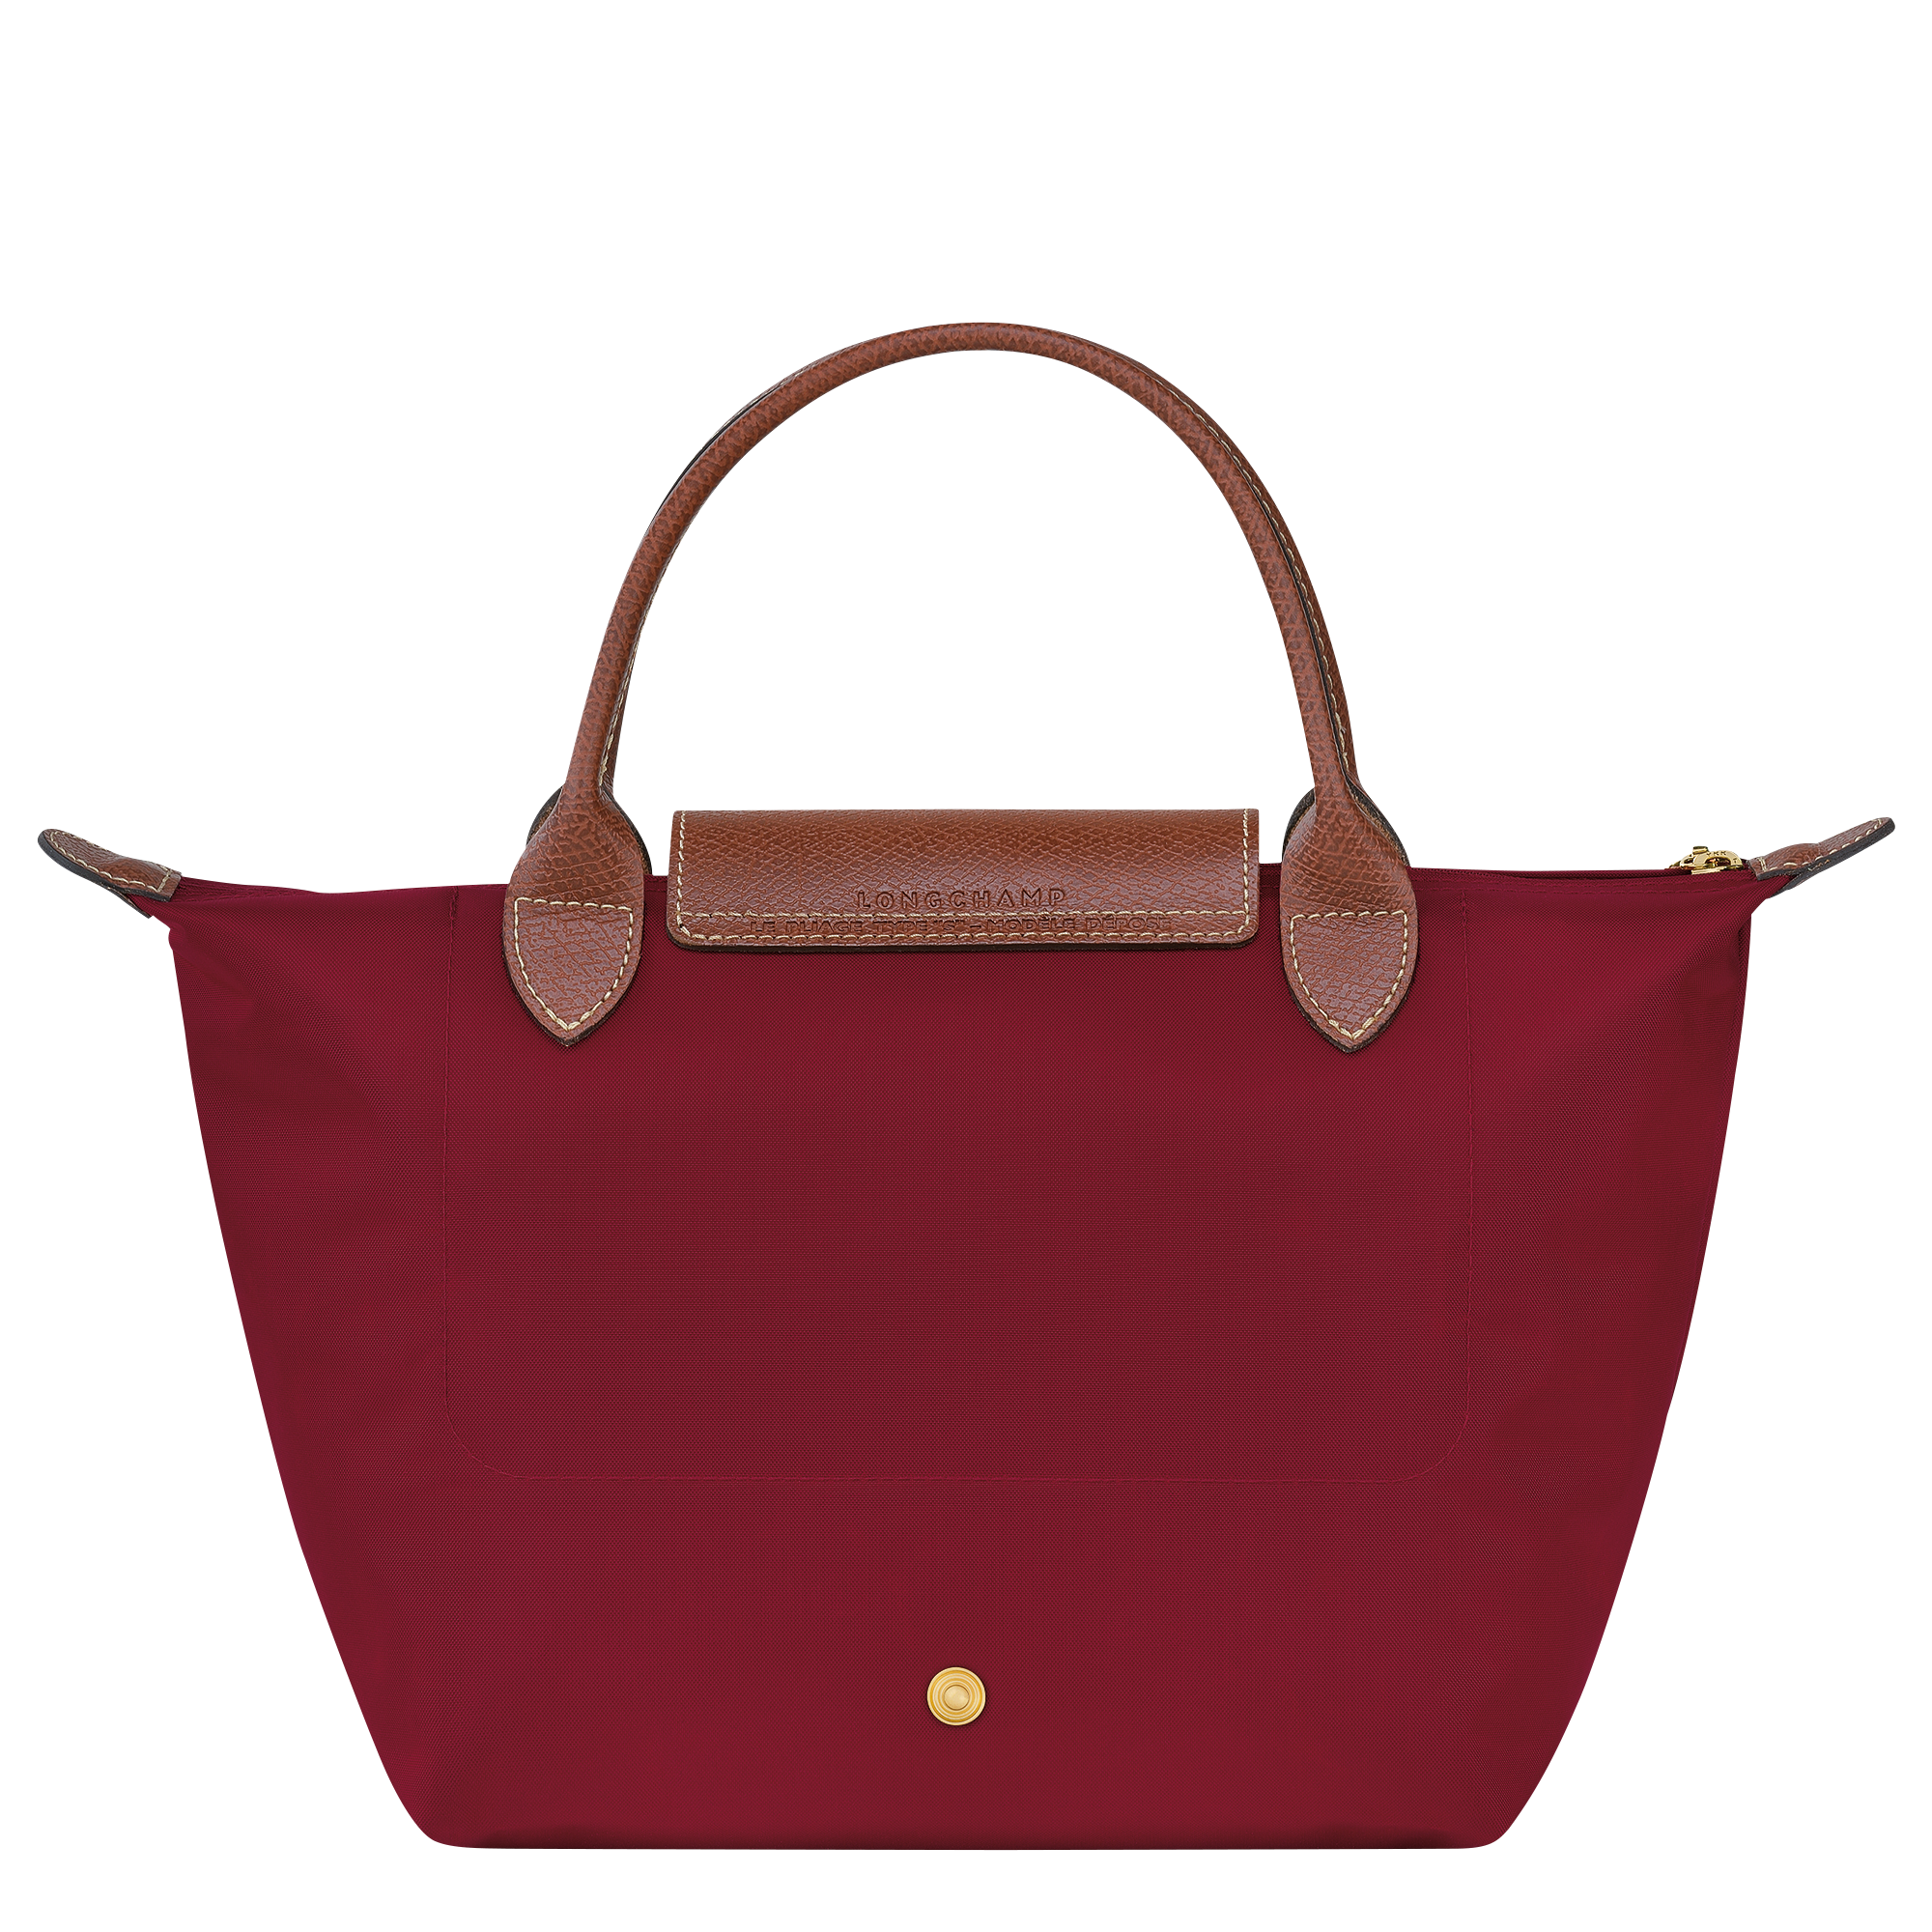 Le Pliage Original Handbag S, Red